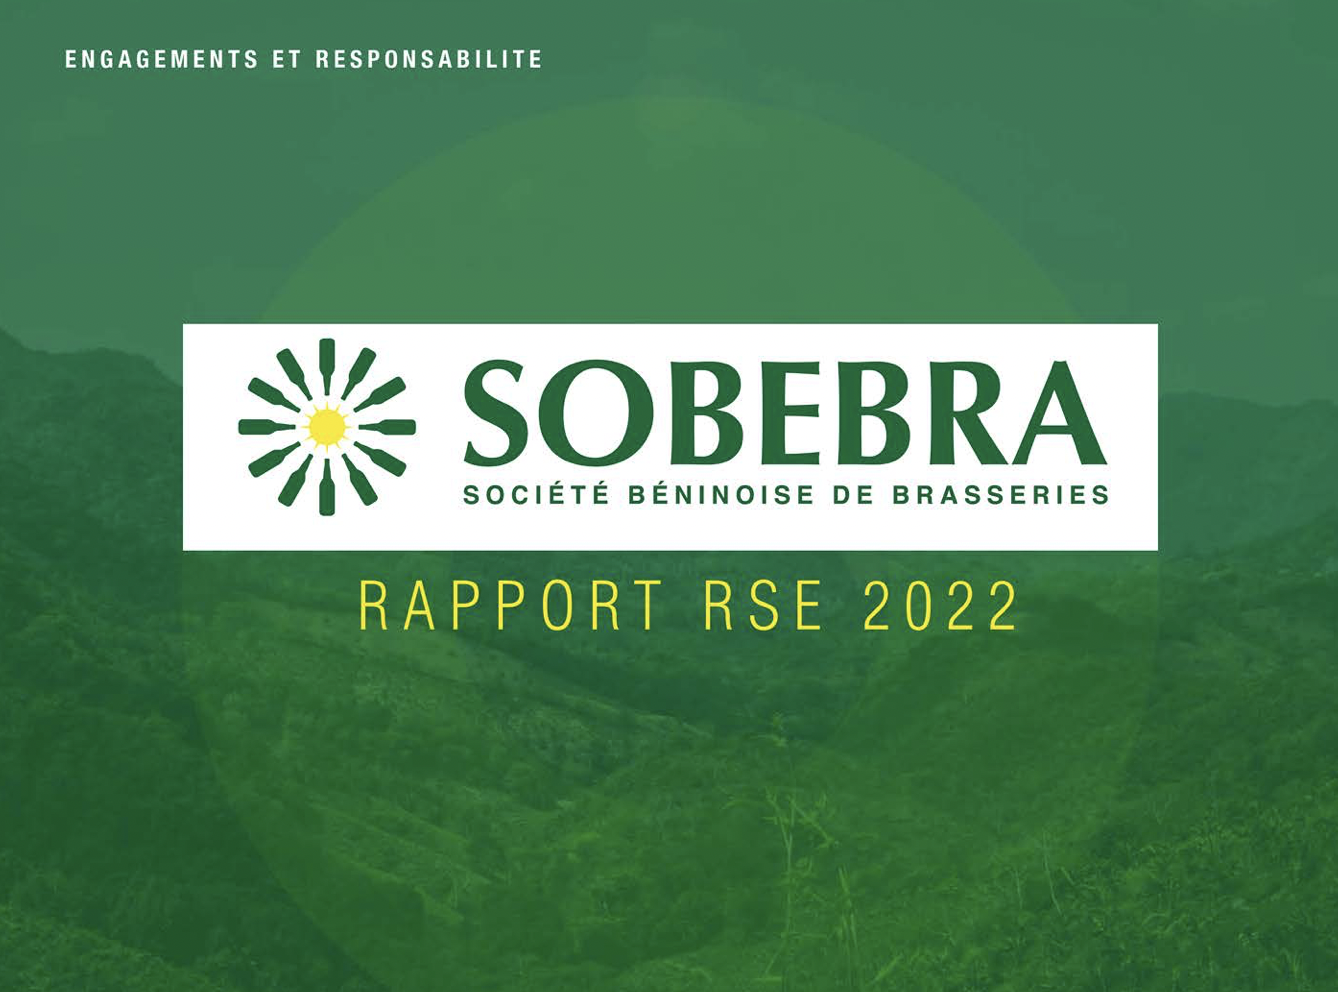 Dans son rapport RSE 2022, la SOBRERA (Société Béninoise de Brasseries) affirme son engagement en faveur d’un développement durable